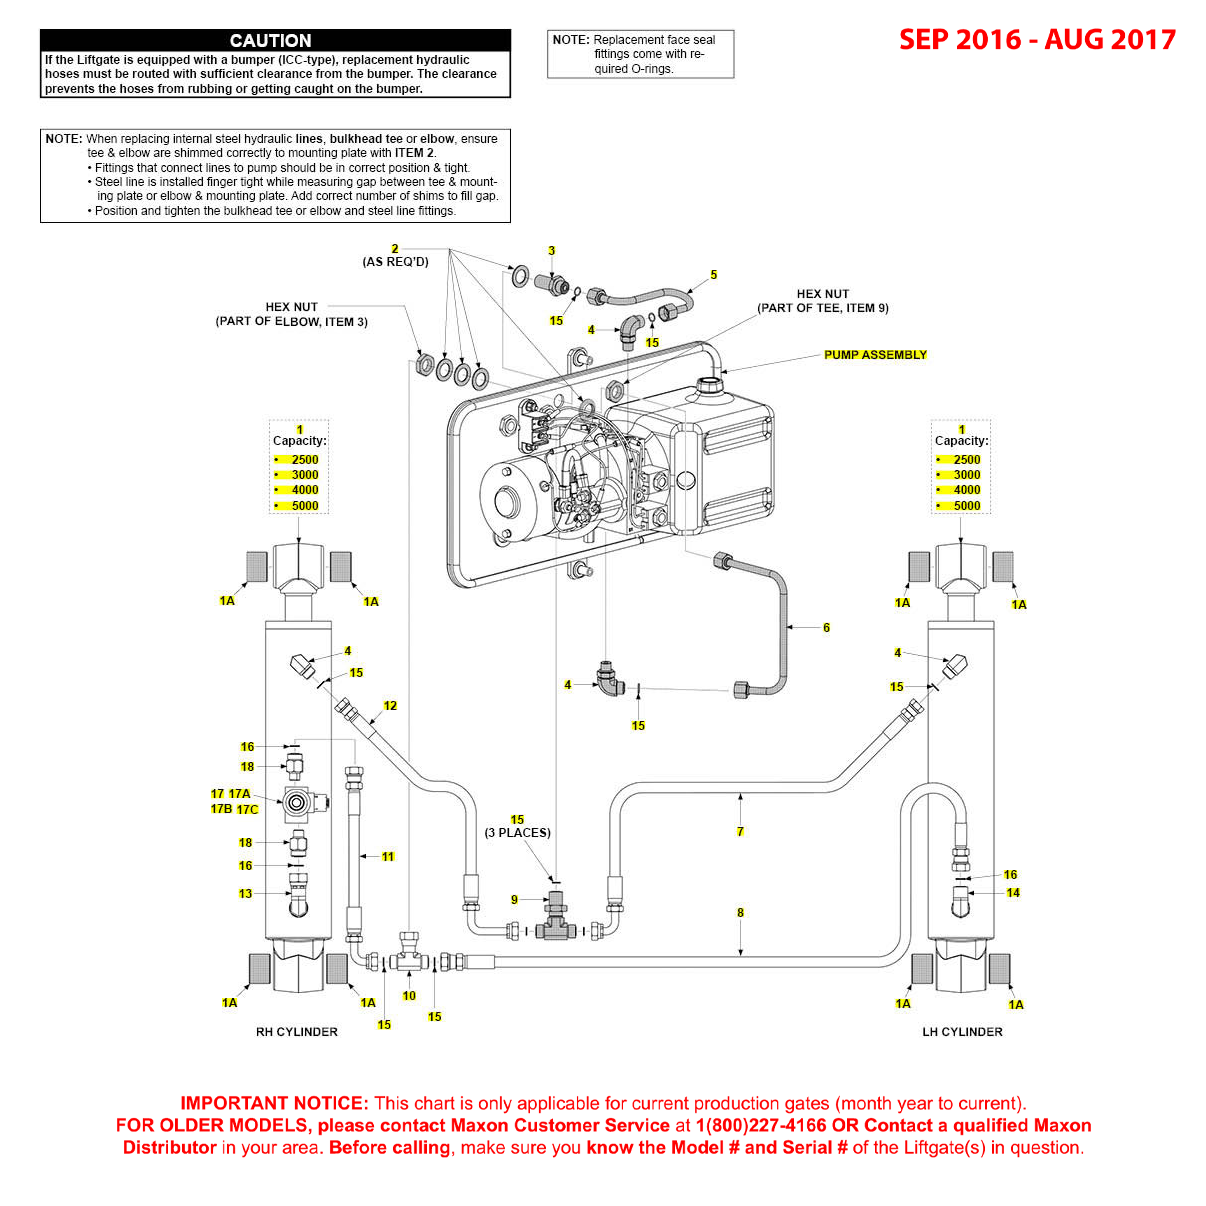 Maxon GPTWR (Sep 2016 - Aug 2017) Power Down Hydraulic Systems Diagram